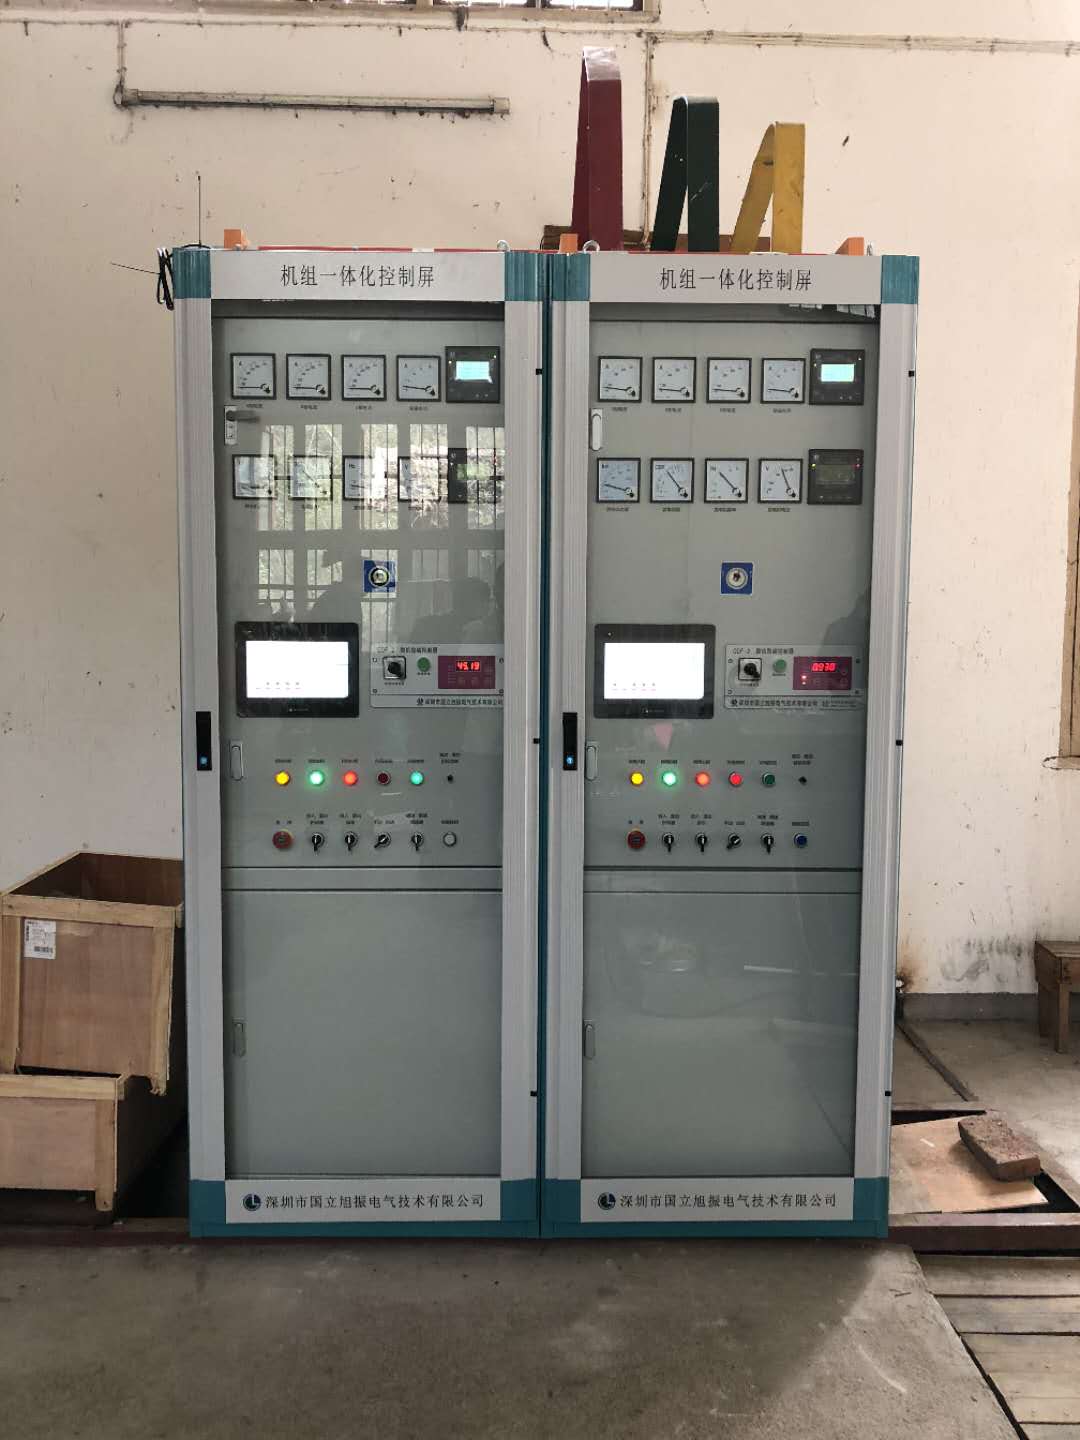 广东清远阳山县九龙水电站低压机组自动化控制系统改造顺利完成